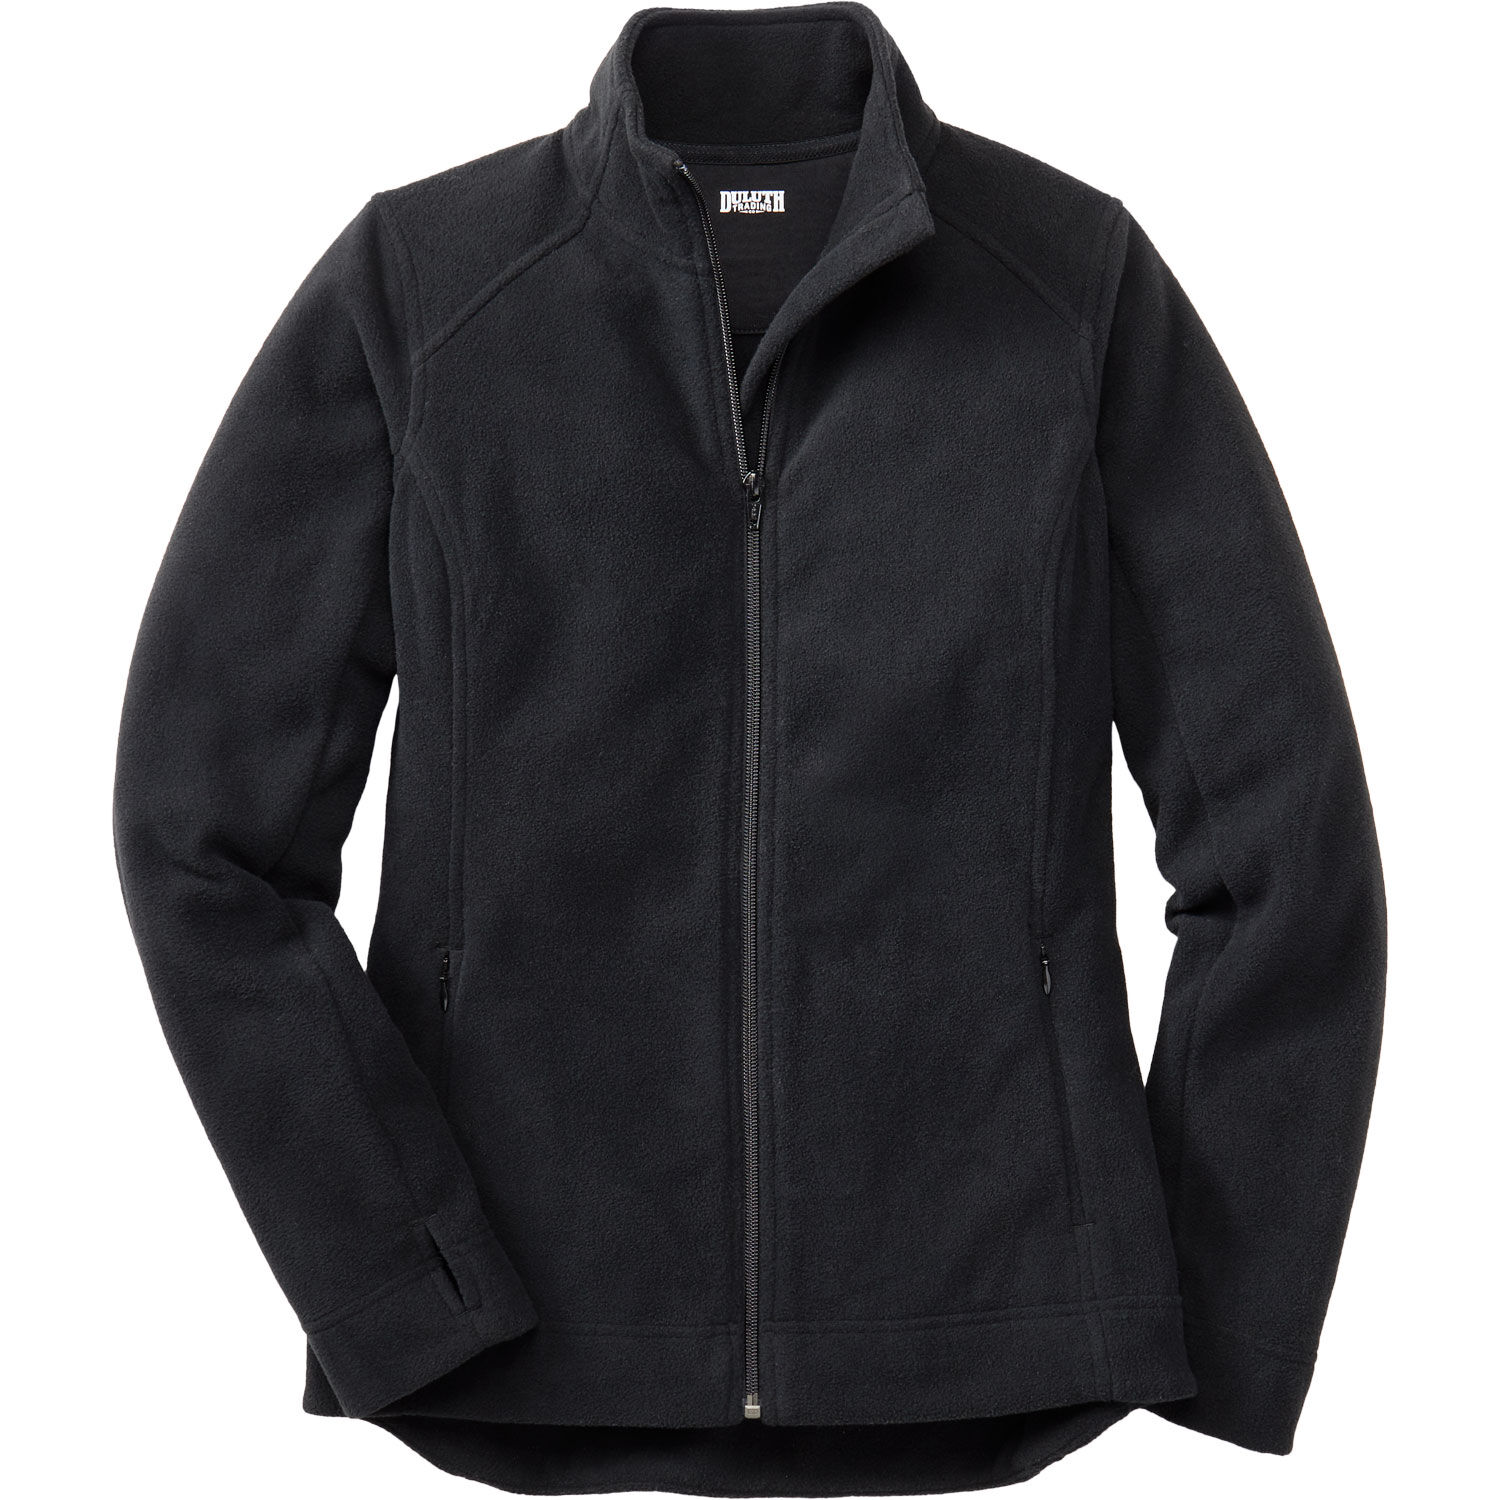 Tripole Anti-Pilling Fleece Winter Jacket Full Zip | Black – Tripole Gears